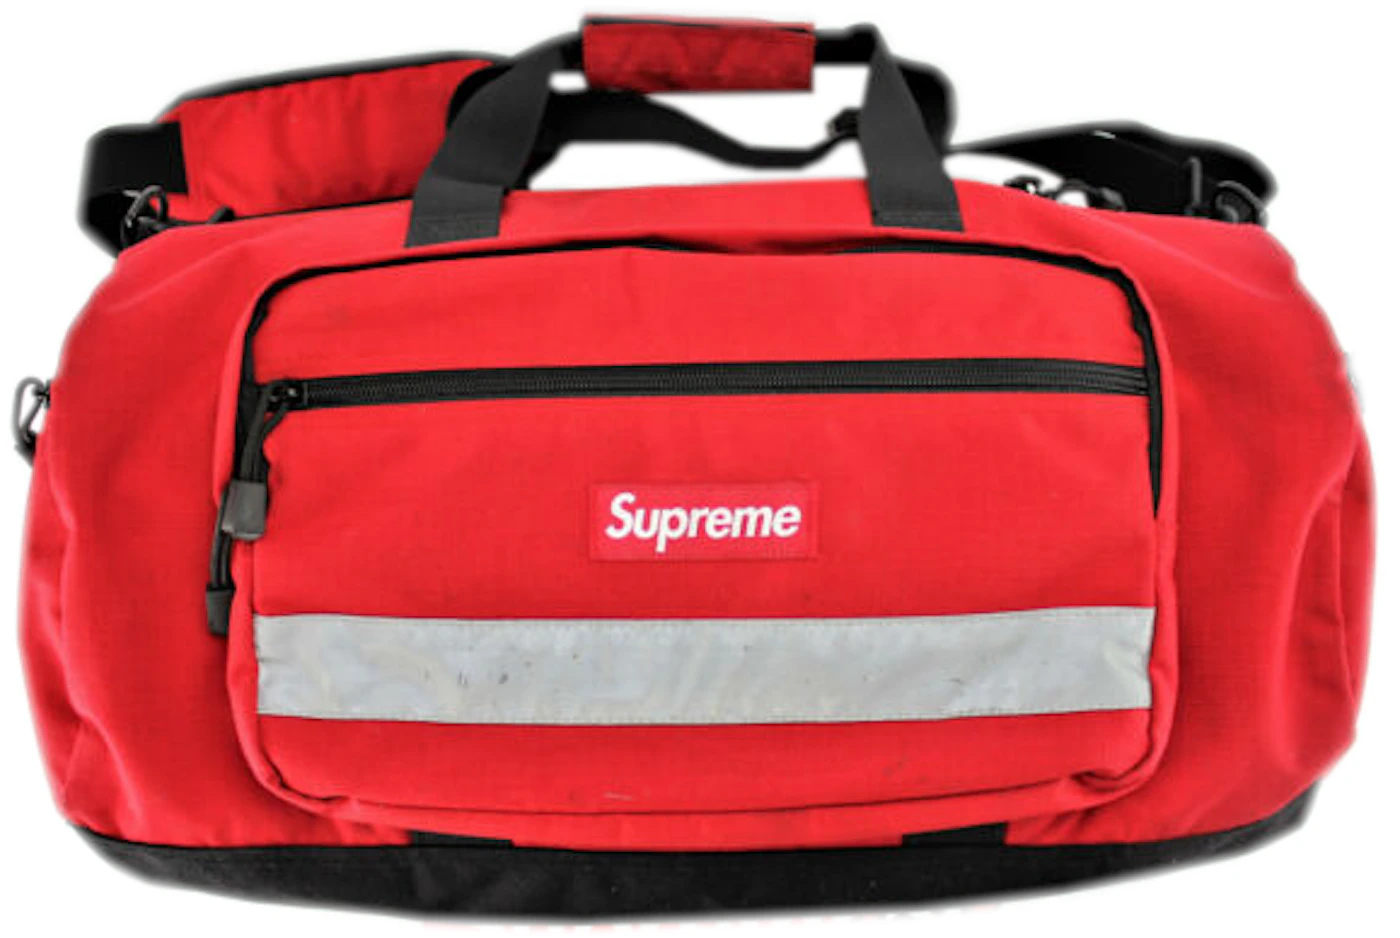 Supreme Hi Vis Duffle Bag Red - FW14 - US